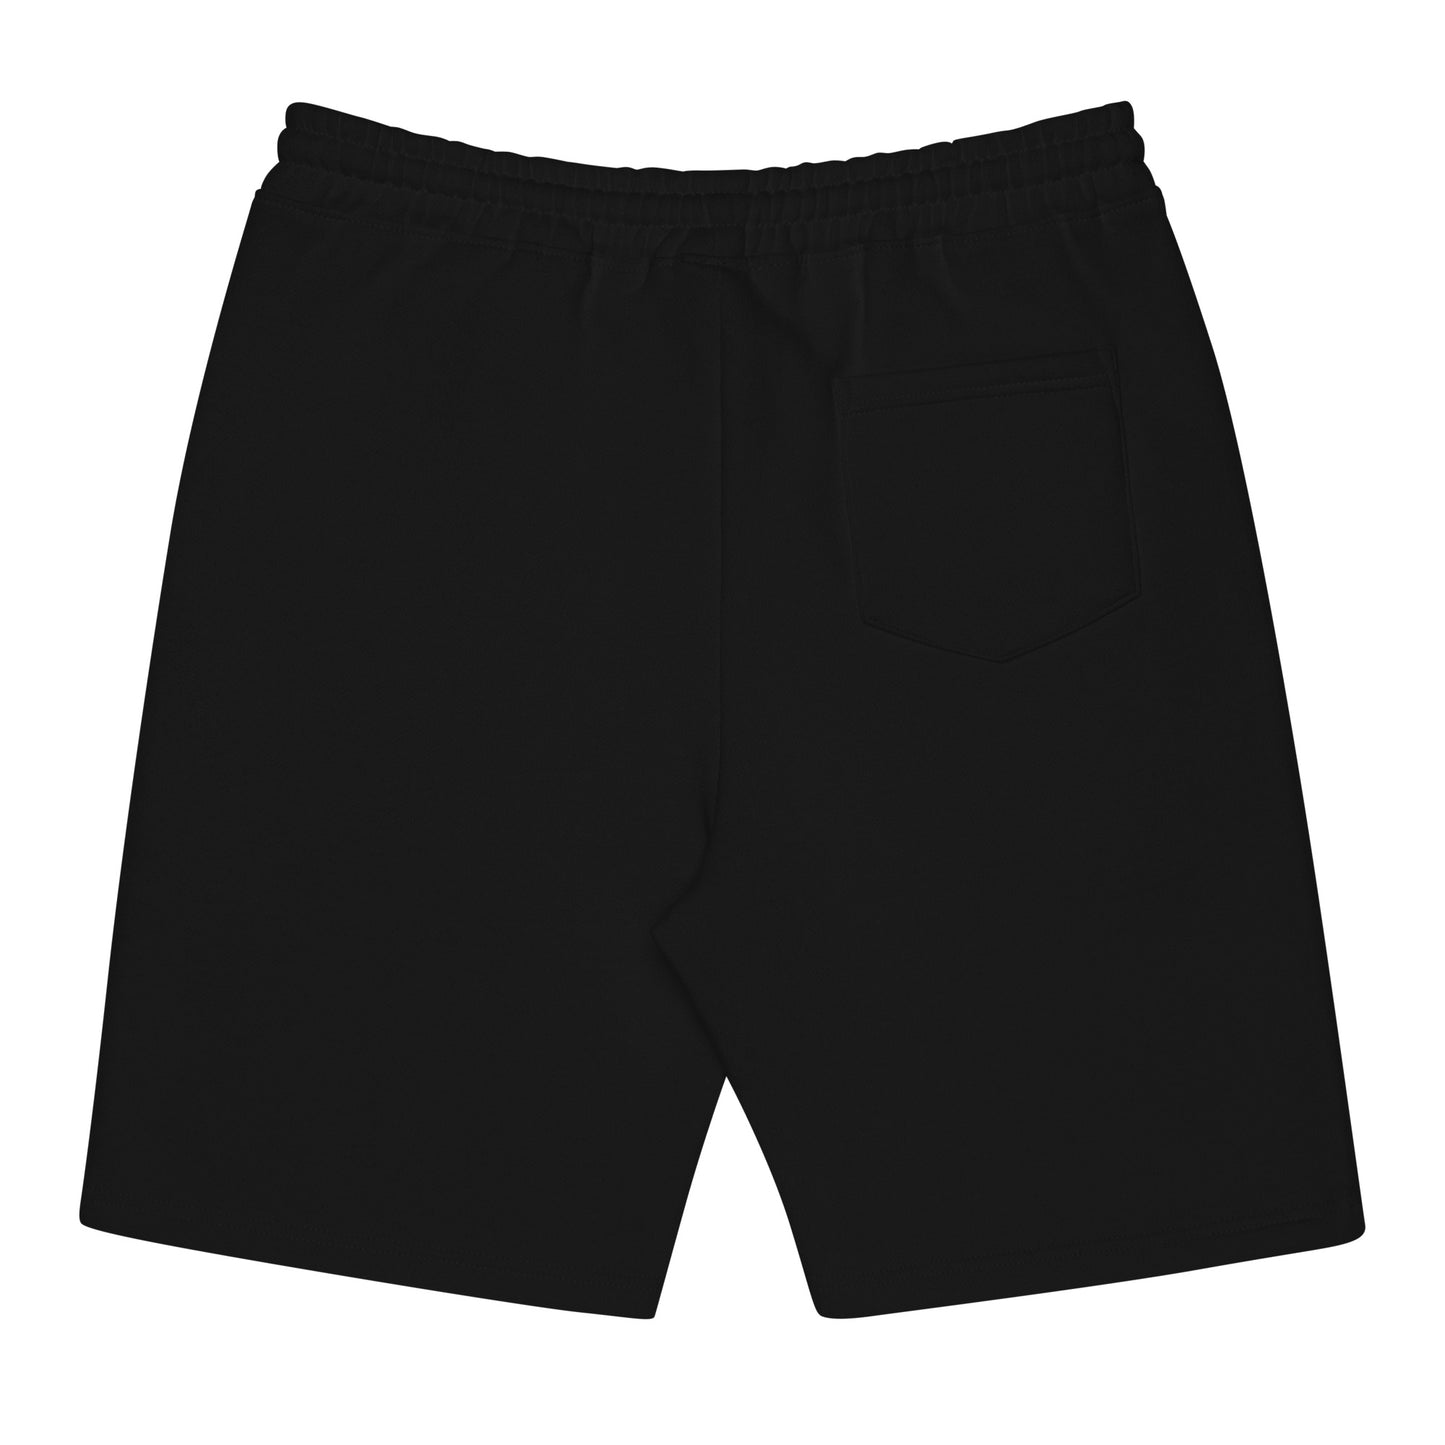 Stony Brook fleece shorts